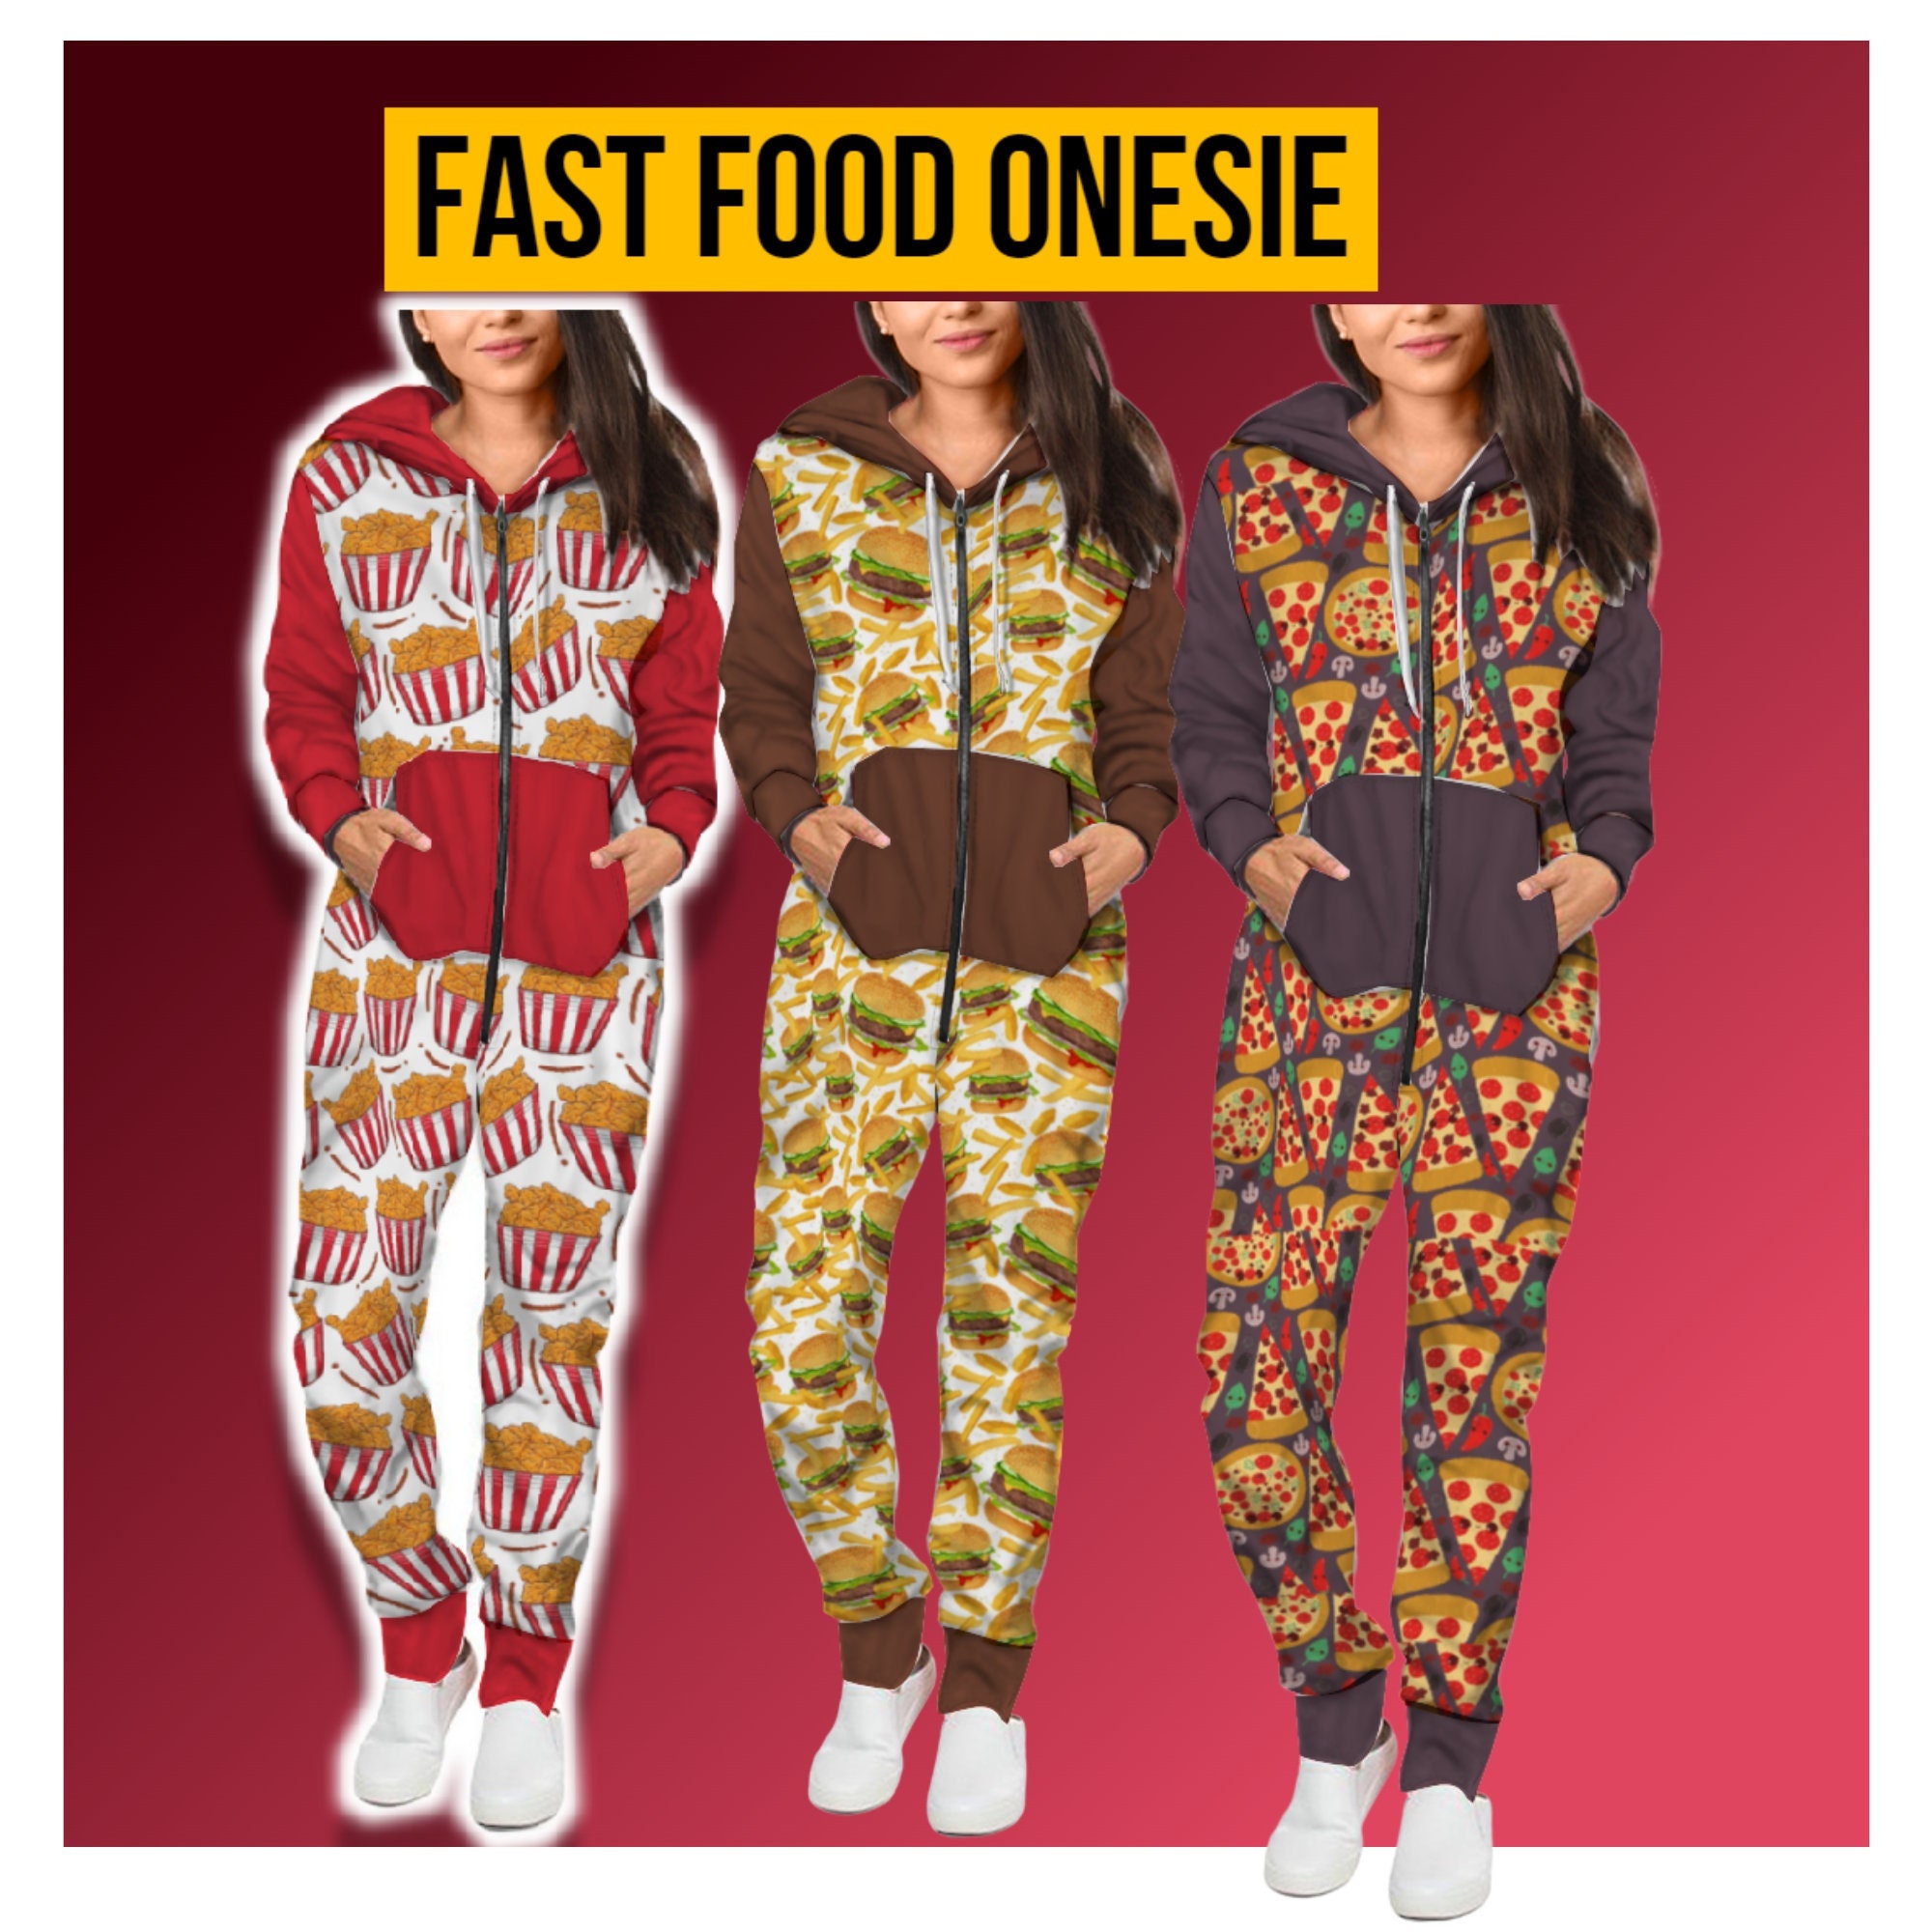 Manoeuvreren Australië Gentleman vriendelijk Junk Food Onesie for Men and Women Womens Fast Food Jumpsuit - Etsy Finland